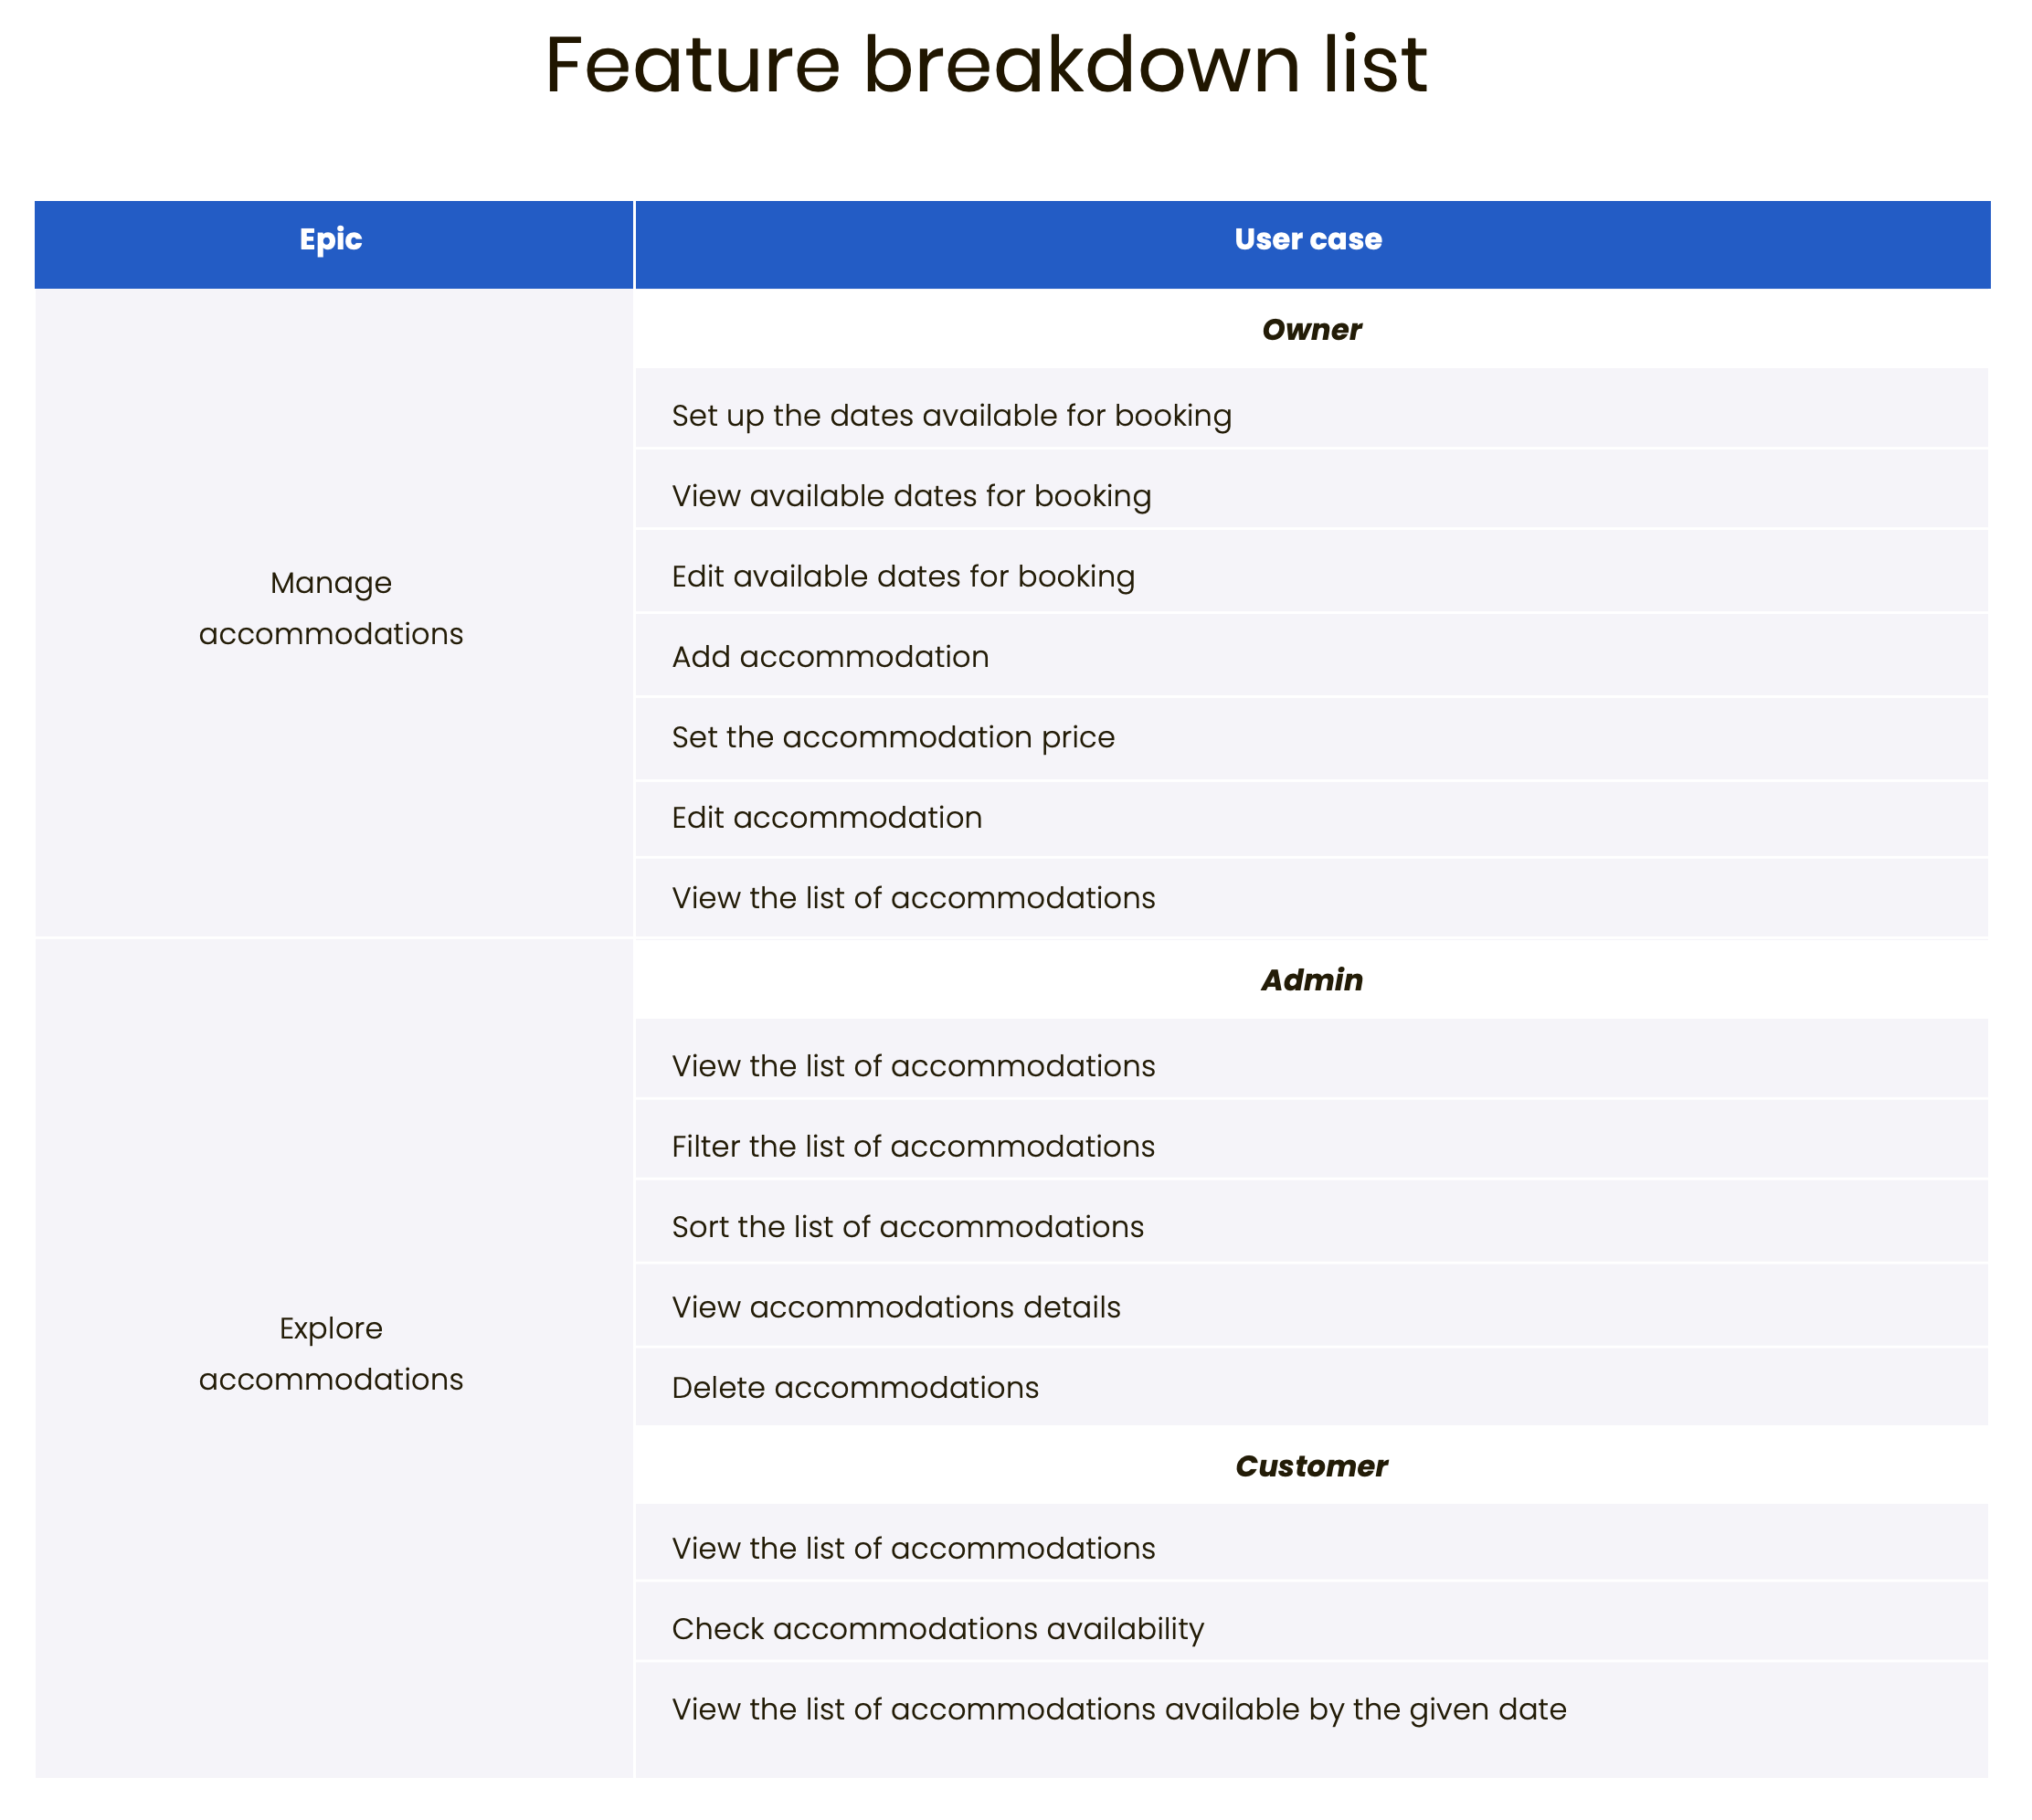 Feature breakdown list